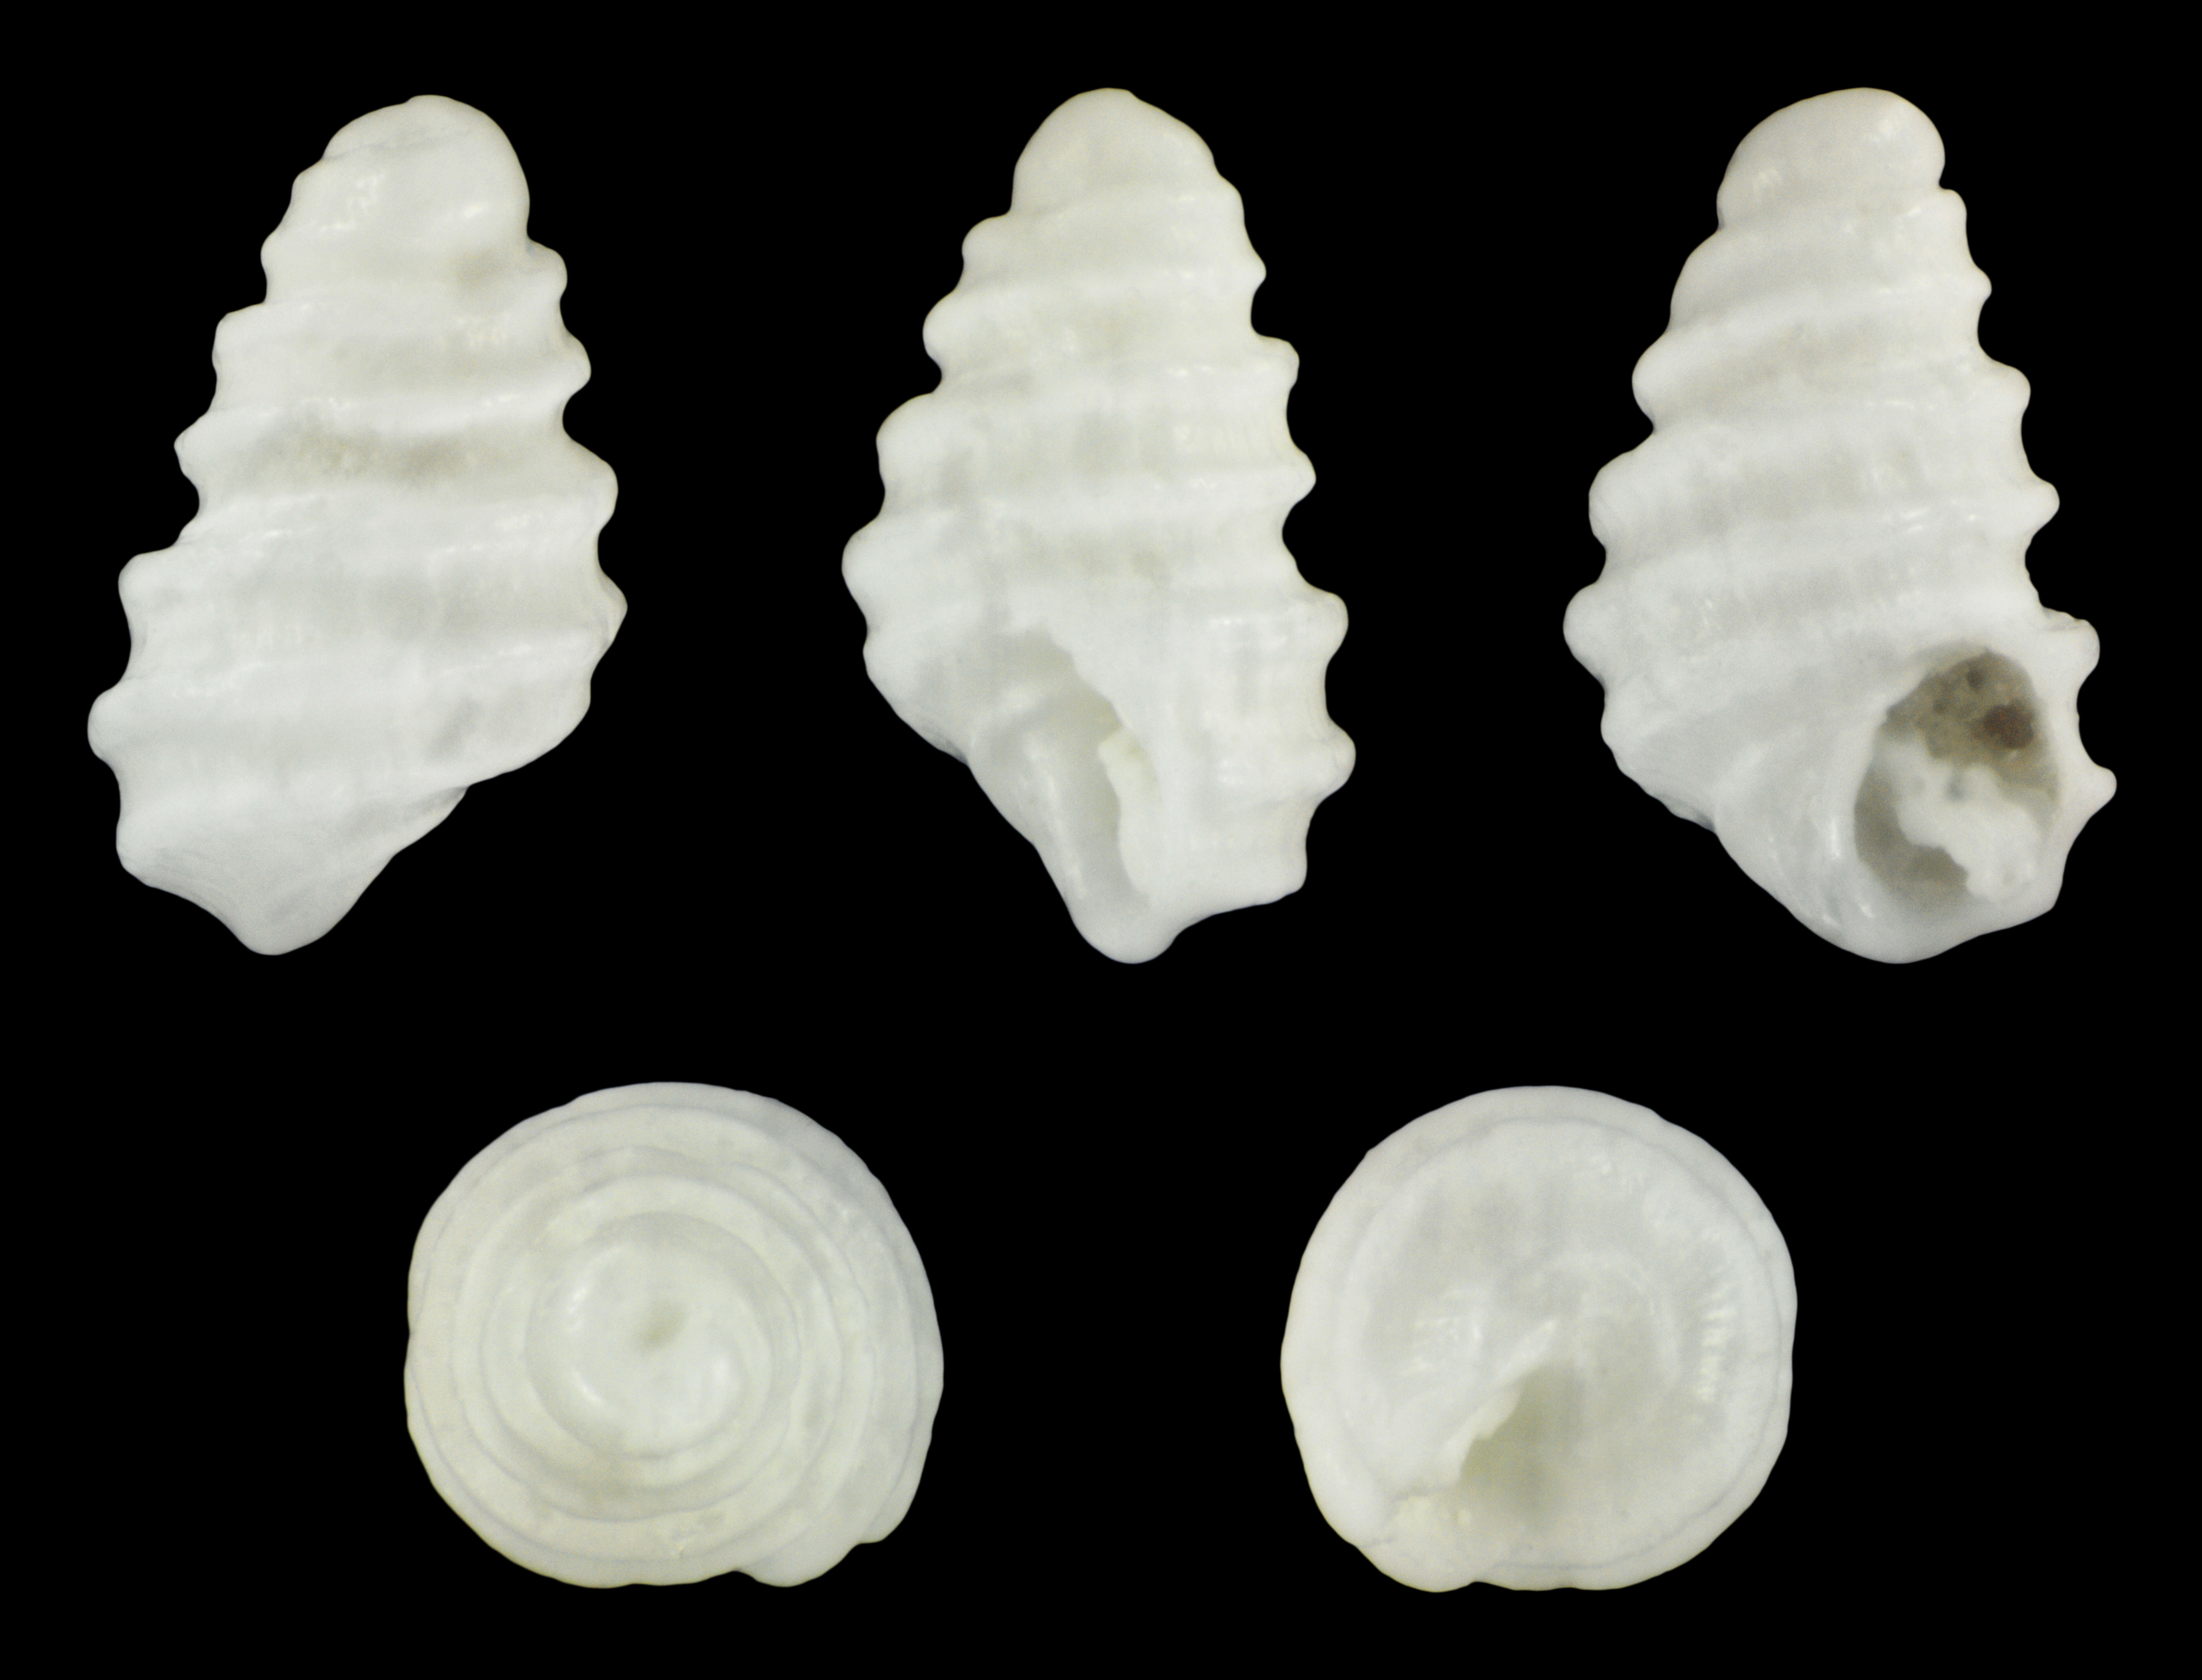 Image de Pseudoscilla babylonia (C. B. Adams 1845)